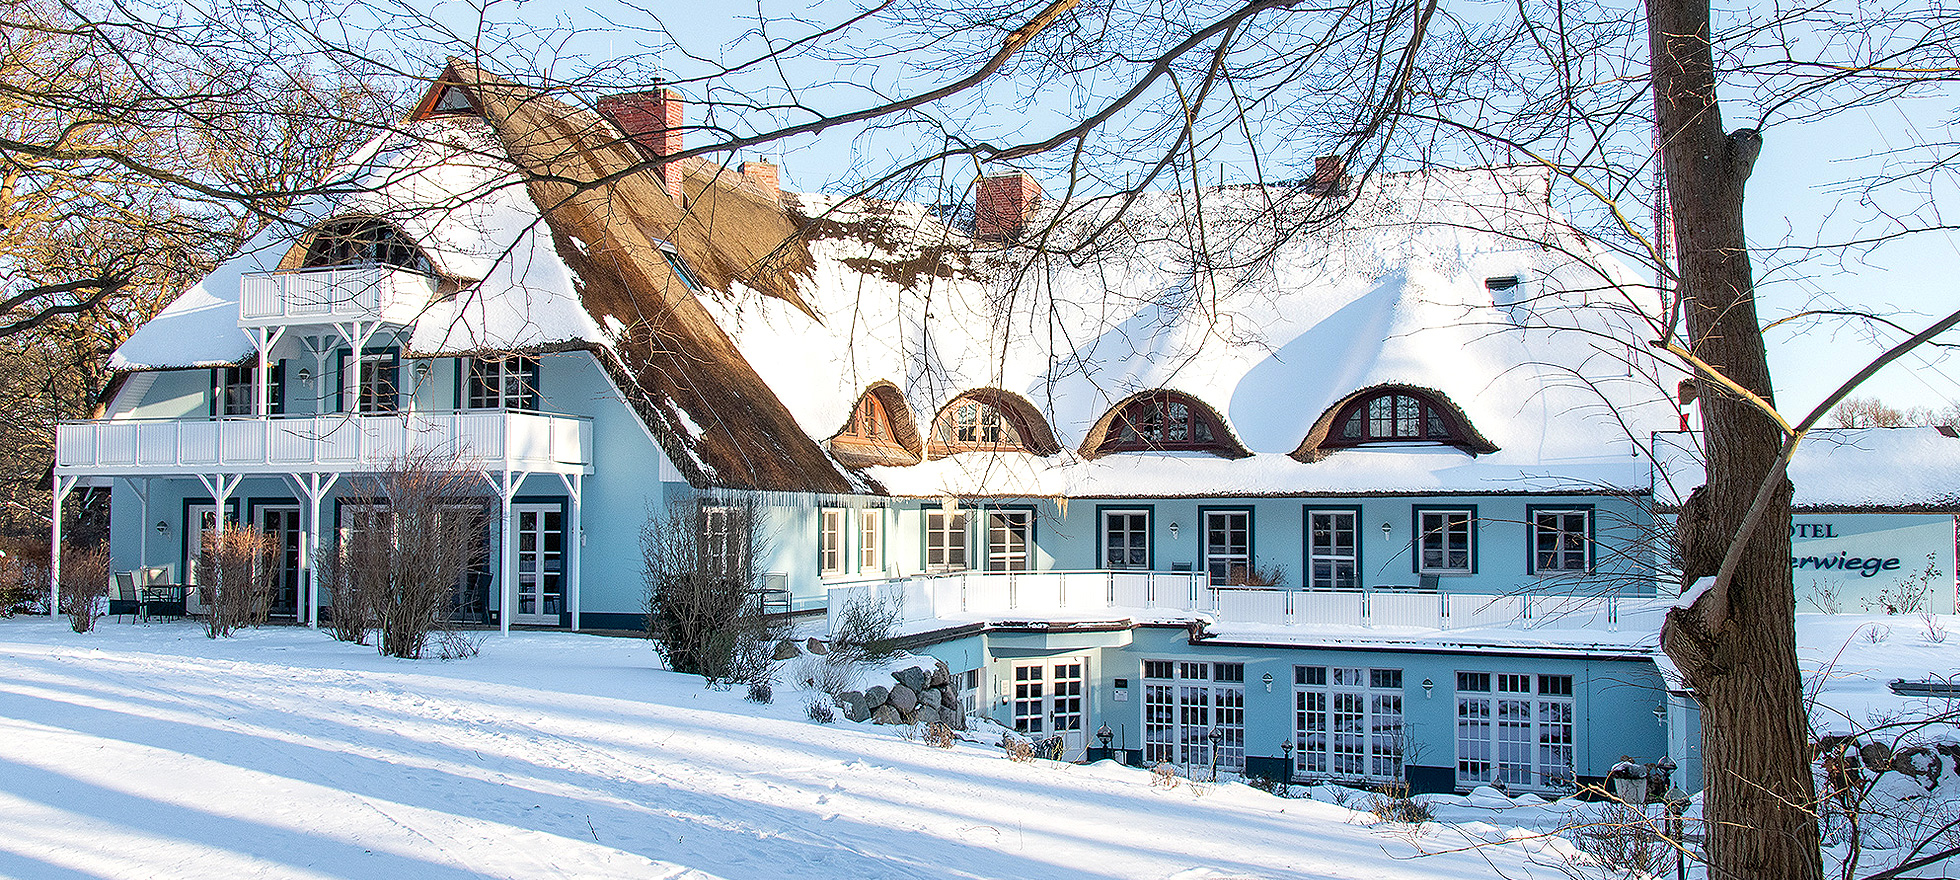 hellblaues, rohrgedecktes Hotel Fischerwiege mit viel Schnee im Winter